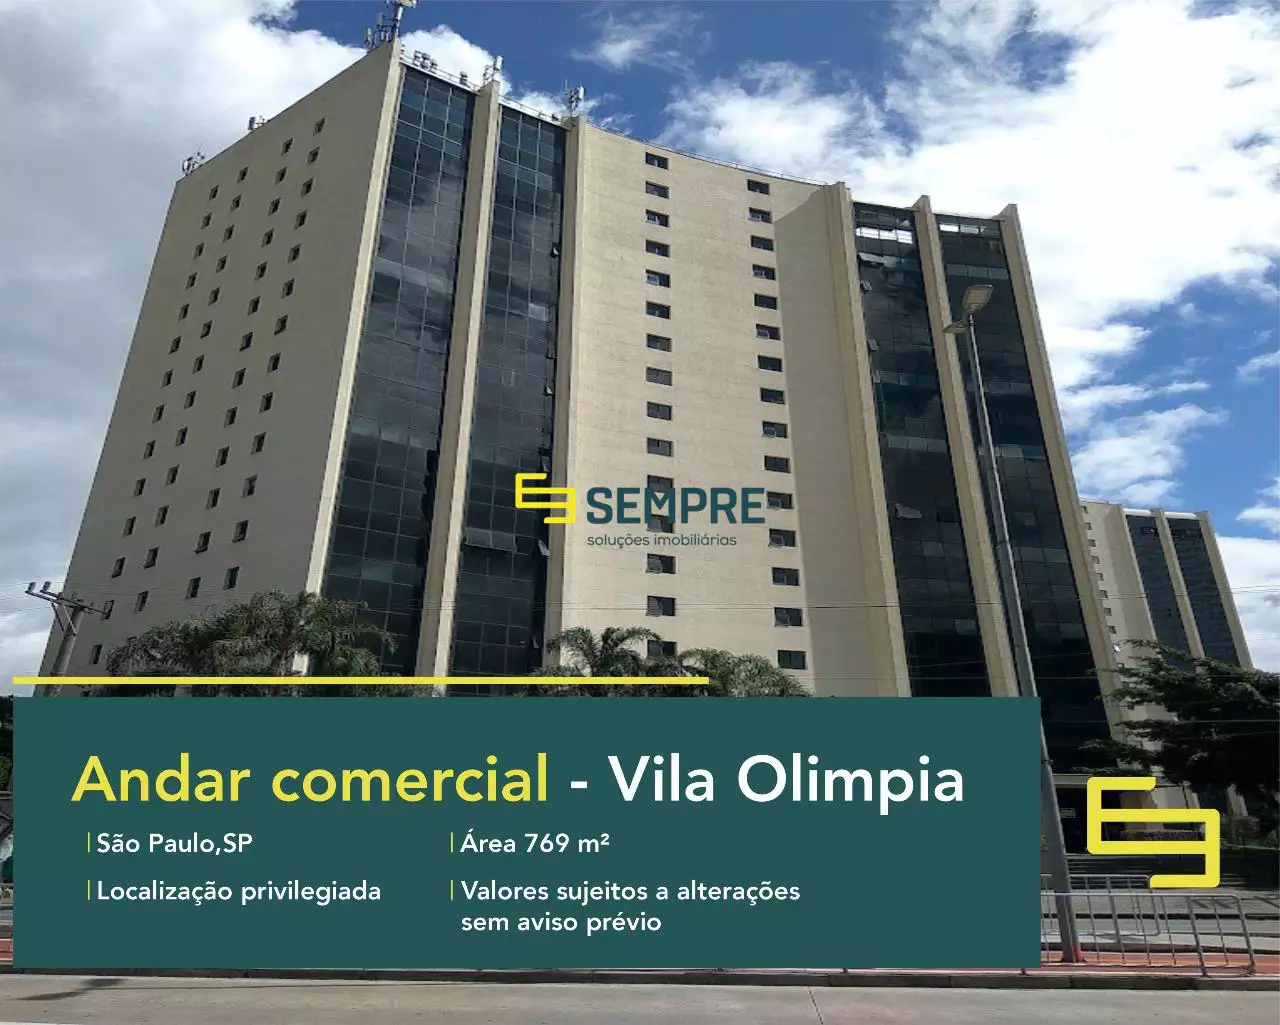 Andar corporativo no bairro Vila Olímpia em São Paulo, excelente localização. O estabelecimento comercial conta com área de 765,62 m².